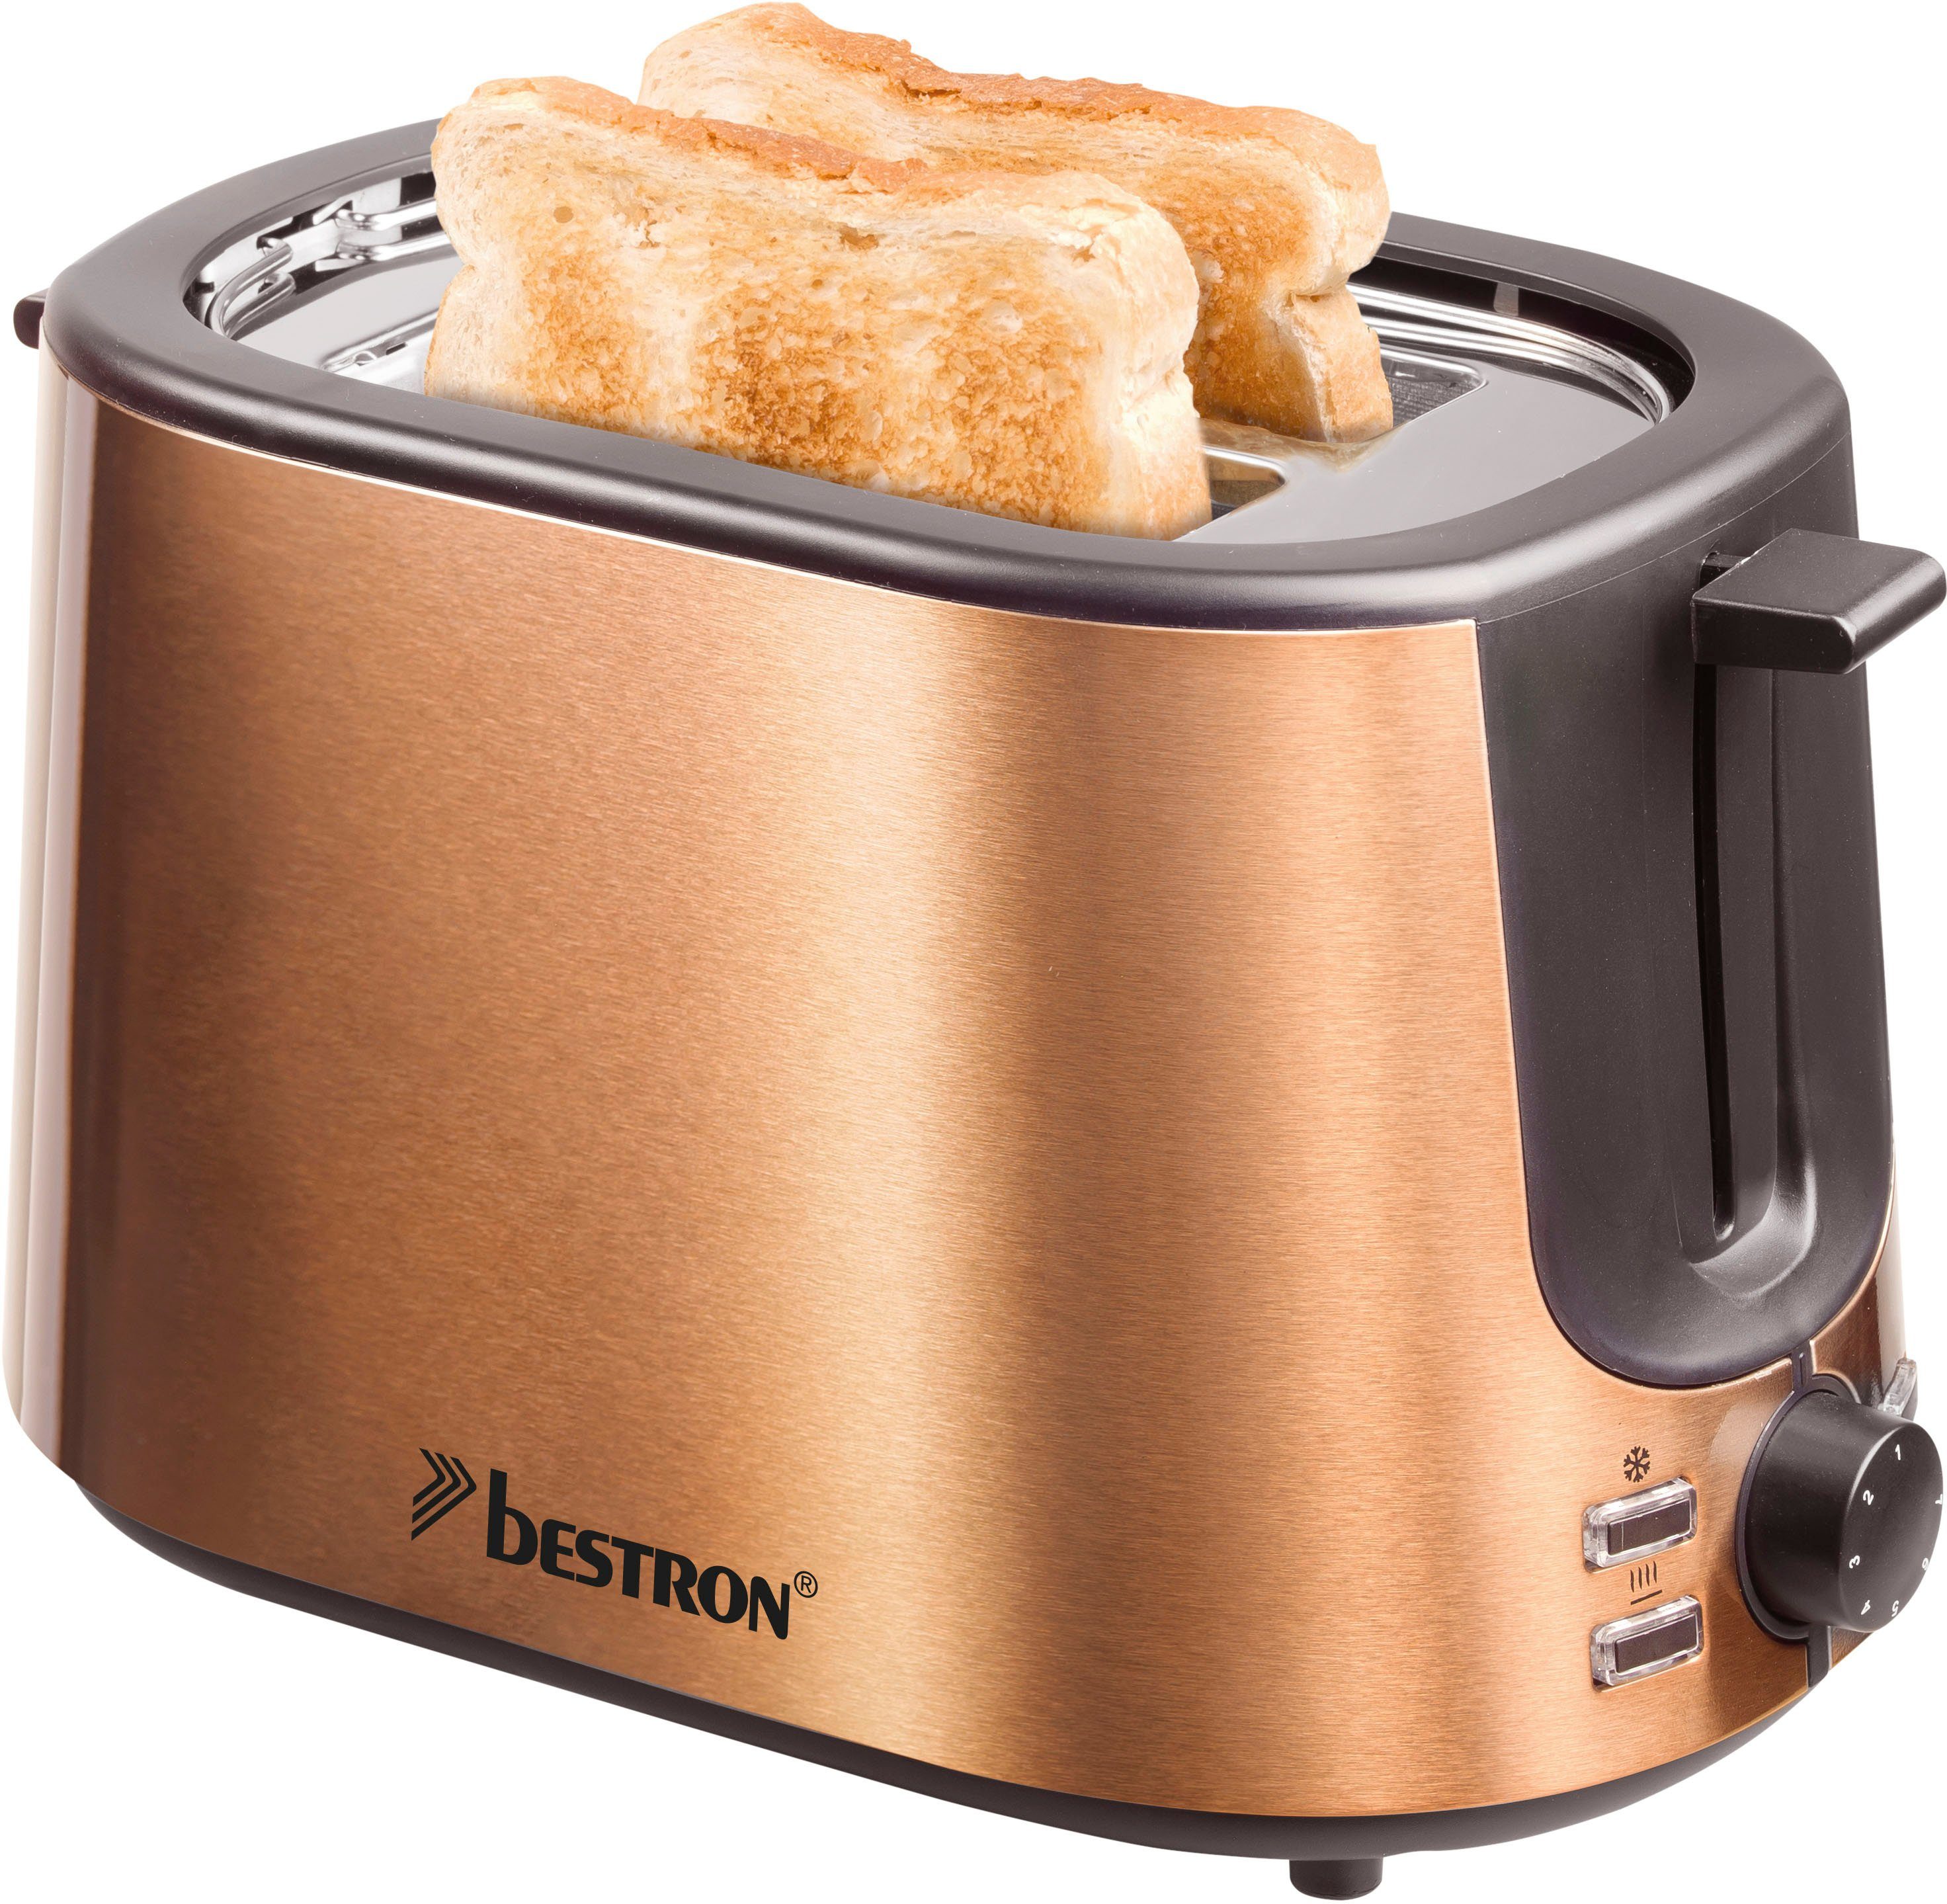 Super beliebter Versandhandel für neue Produkte bestron Toaster ATS1000CO, 2 kurze für Schlitze, Edelstahl Kupfer-Optik W, 2 Brötchen-Röstaufsatz, Scheiben, 1000 und Krümelschublade in